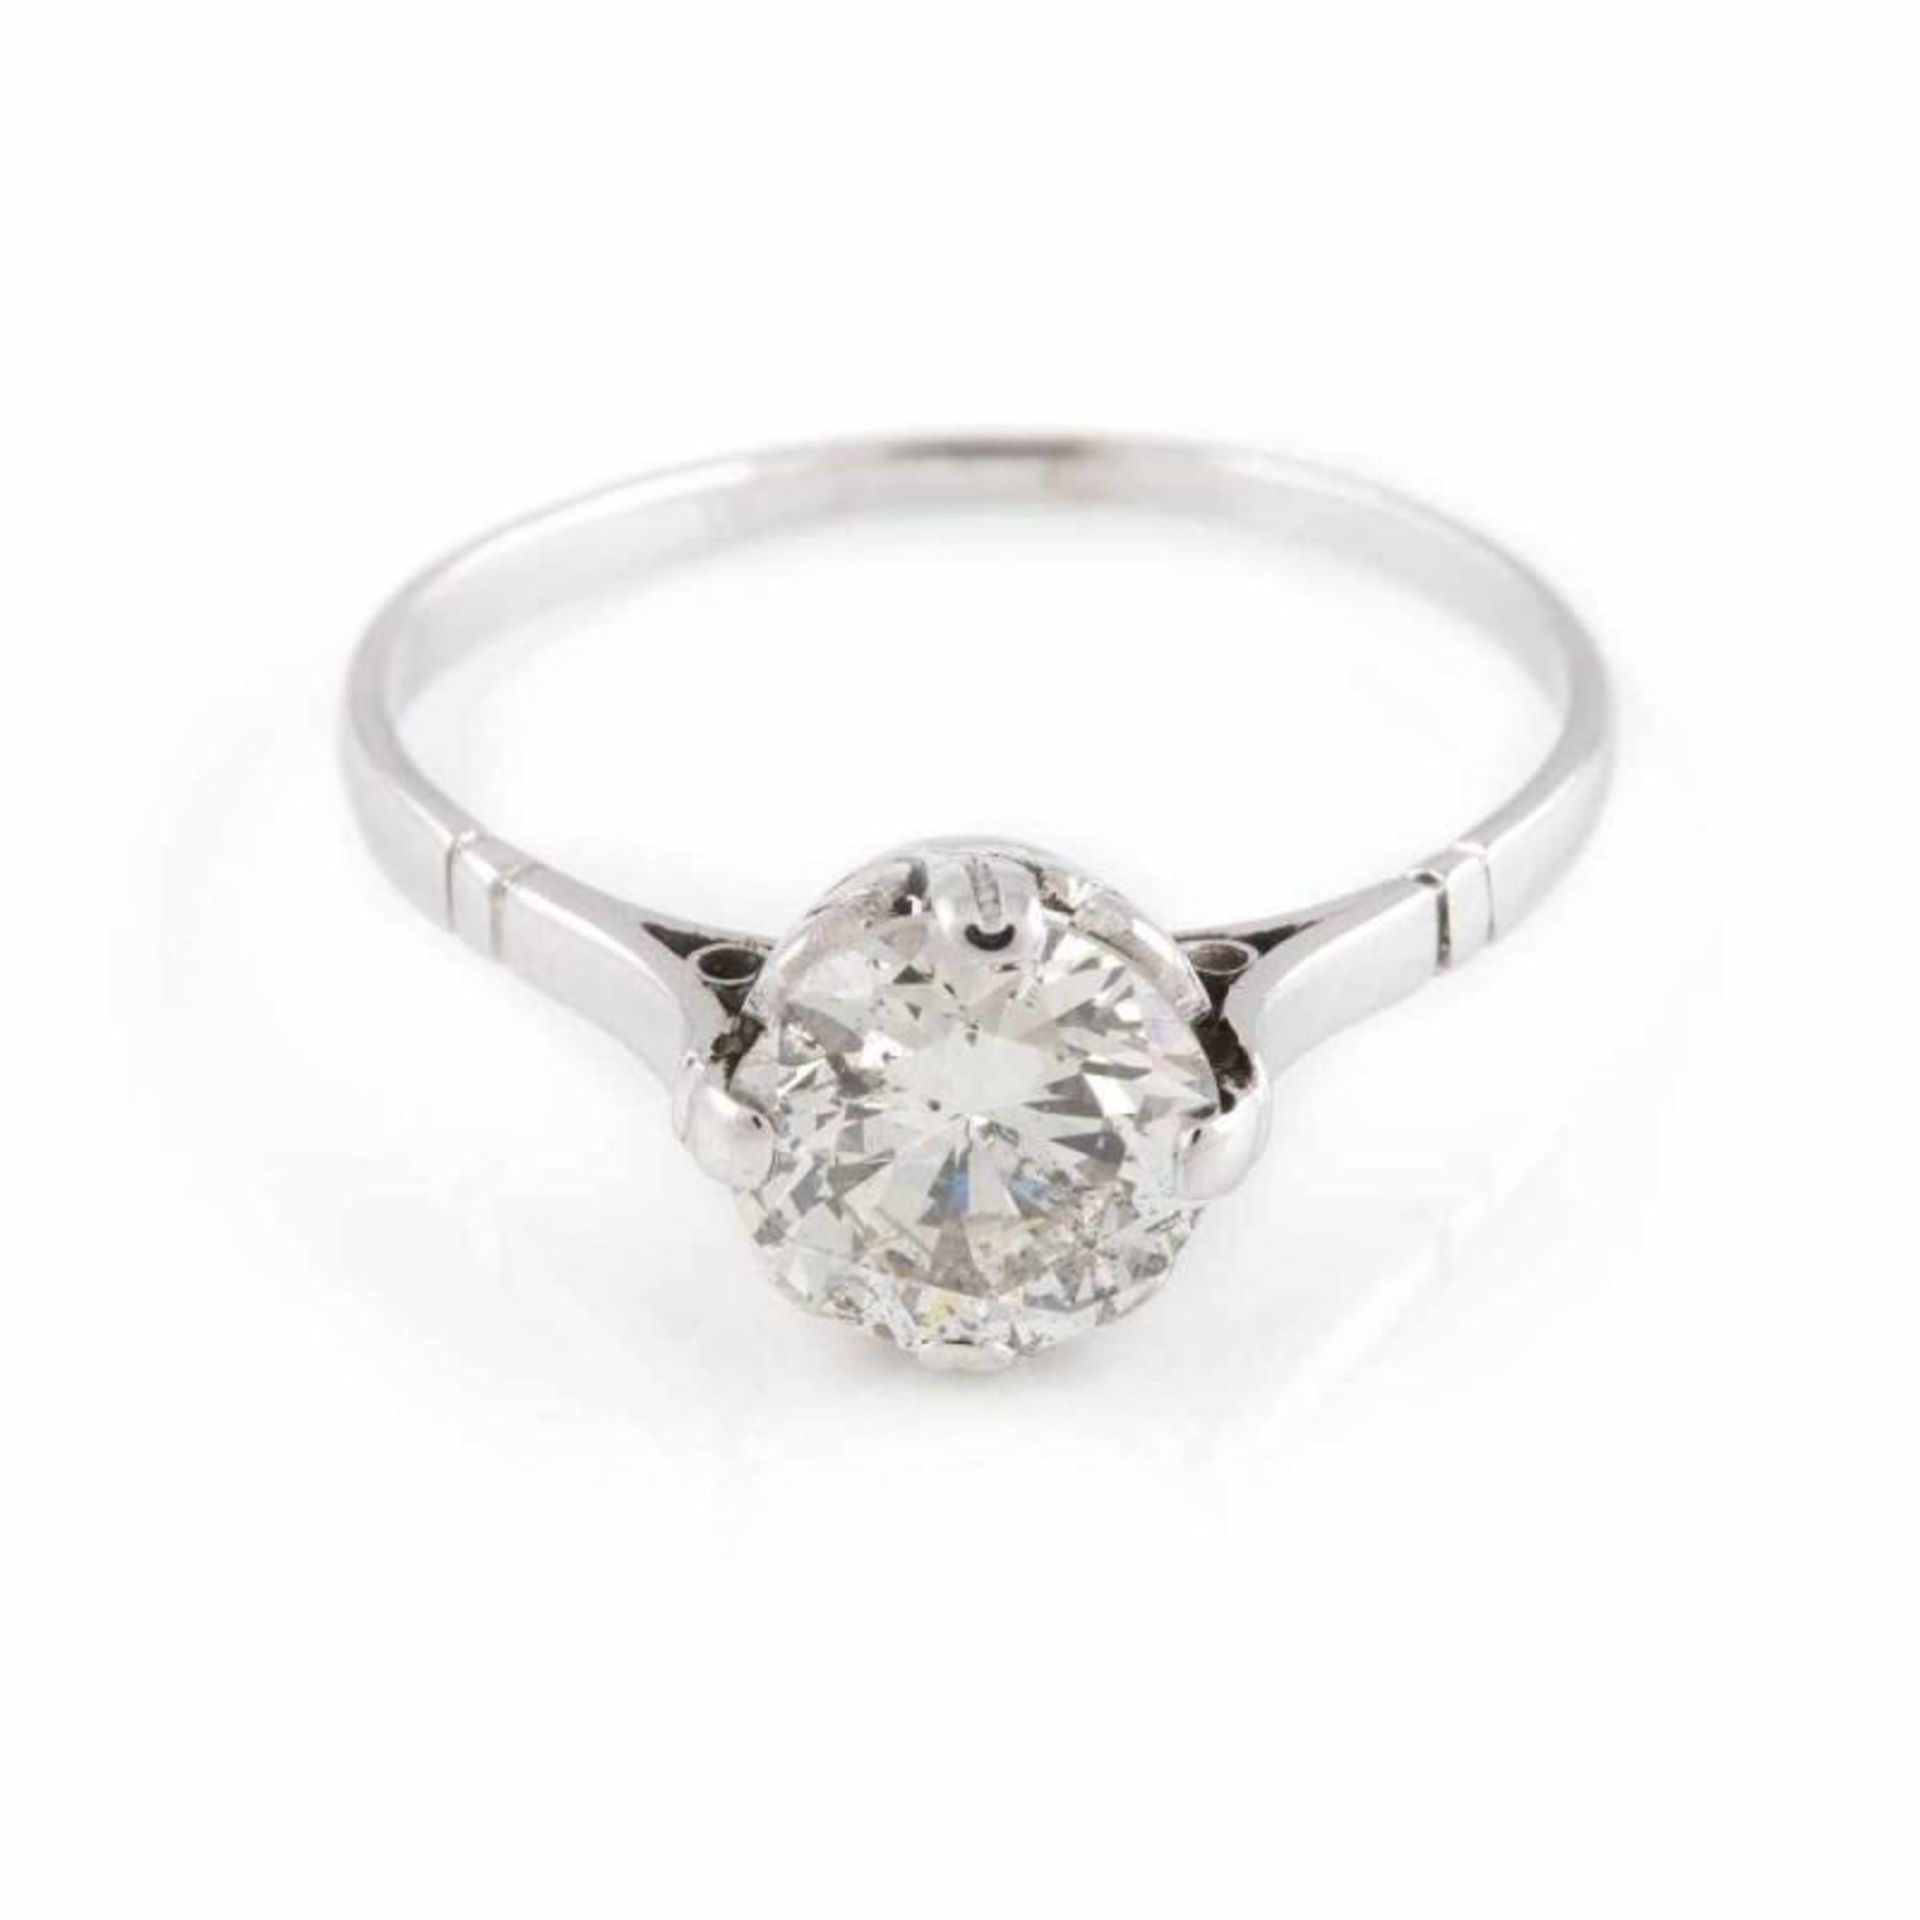 DIAMANT-SOLITAIRE-RING Um 1910 Platin geprüft. Ringmaß ca. 56,5, Ges.-Gew. ca. 2,5 g. Ein Diamant im